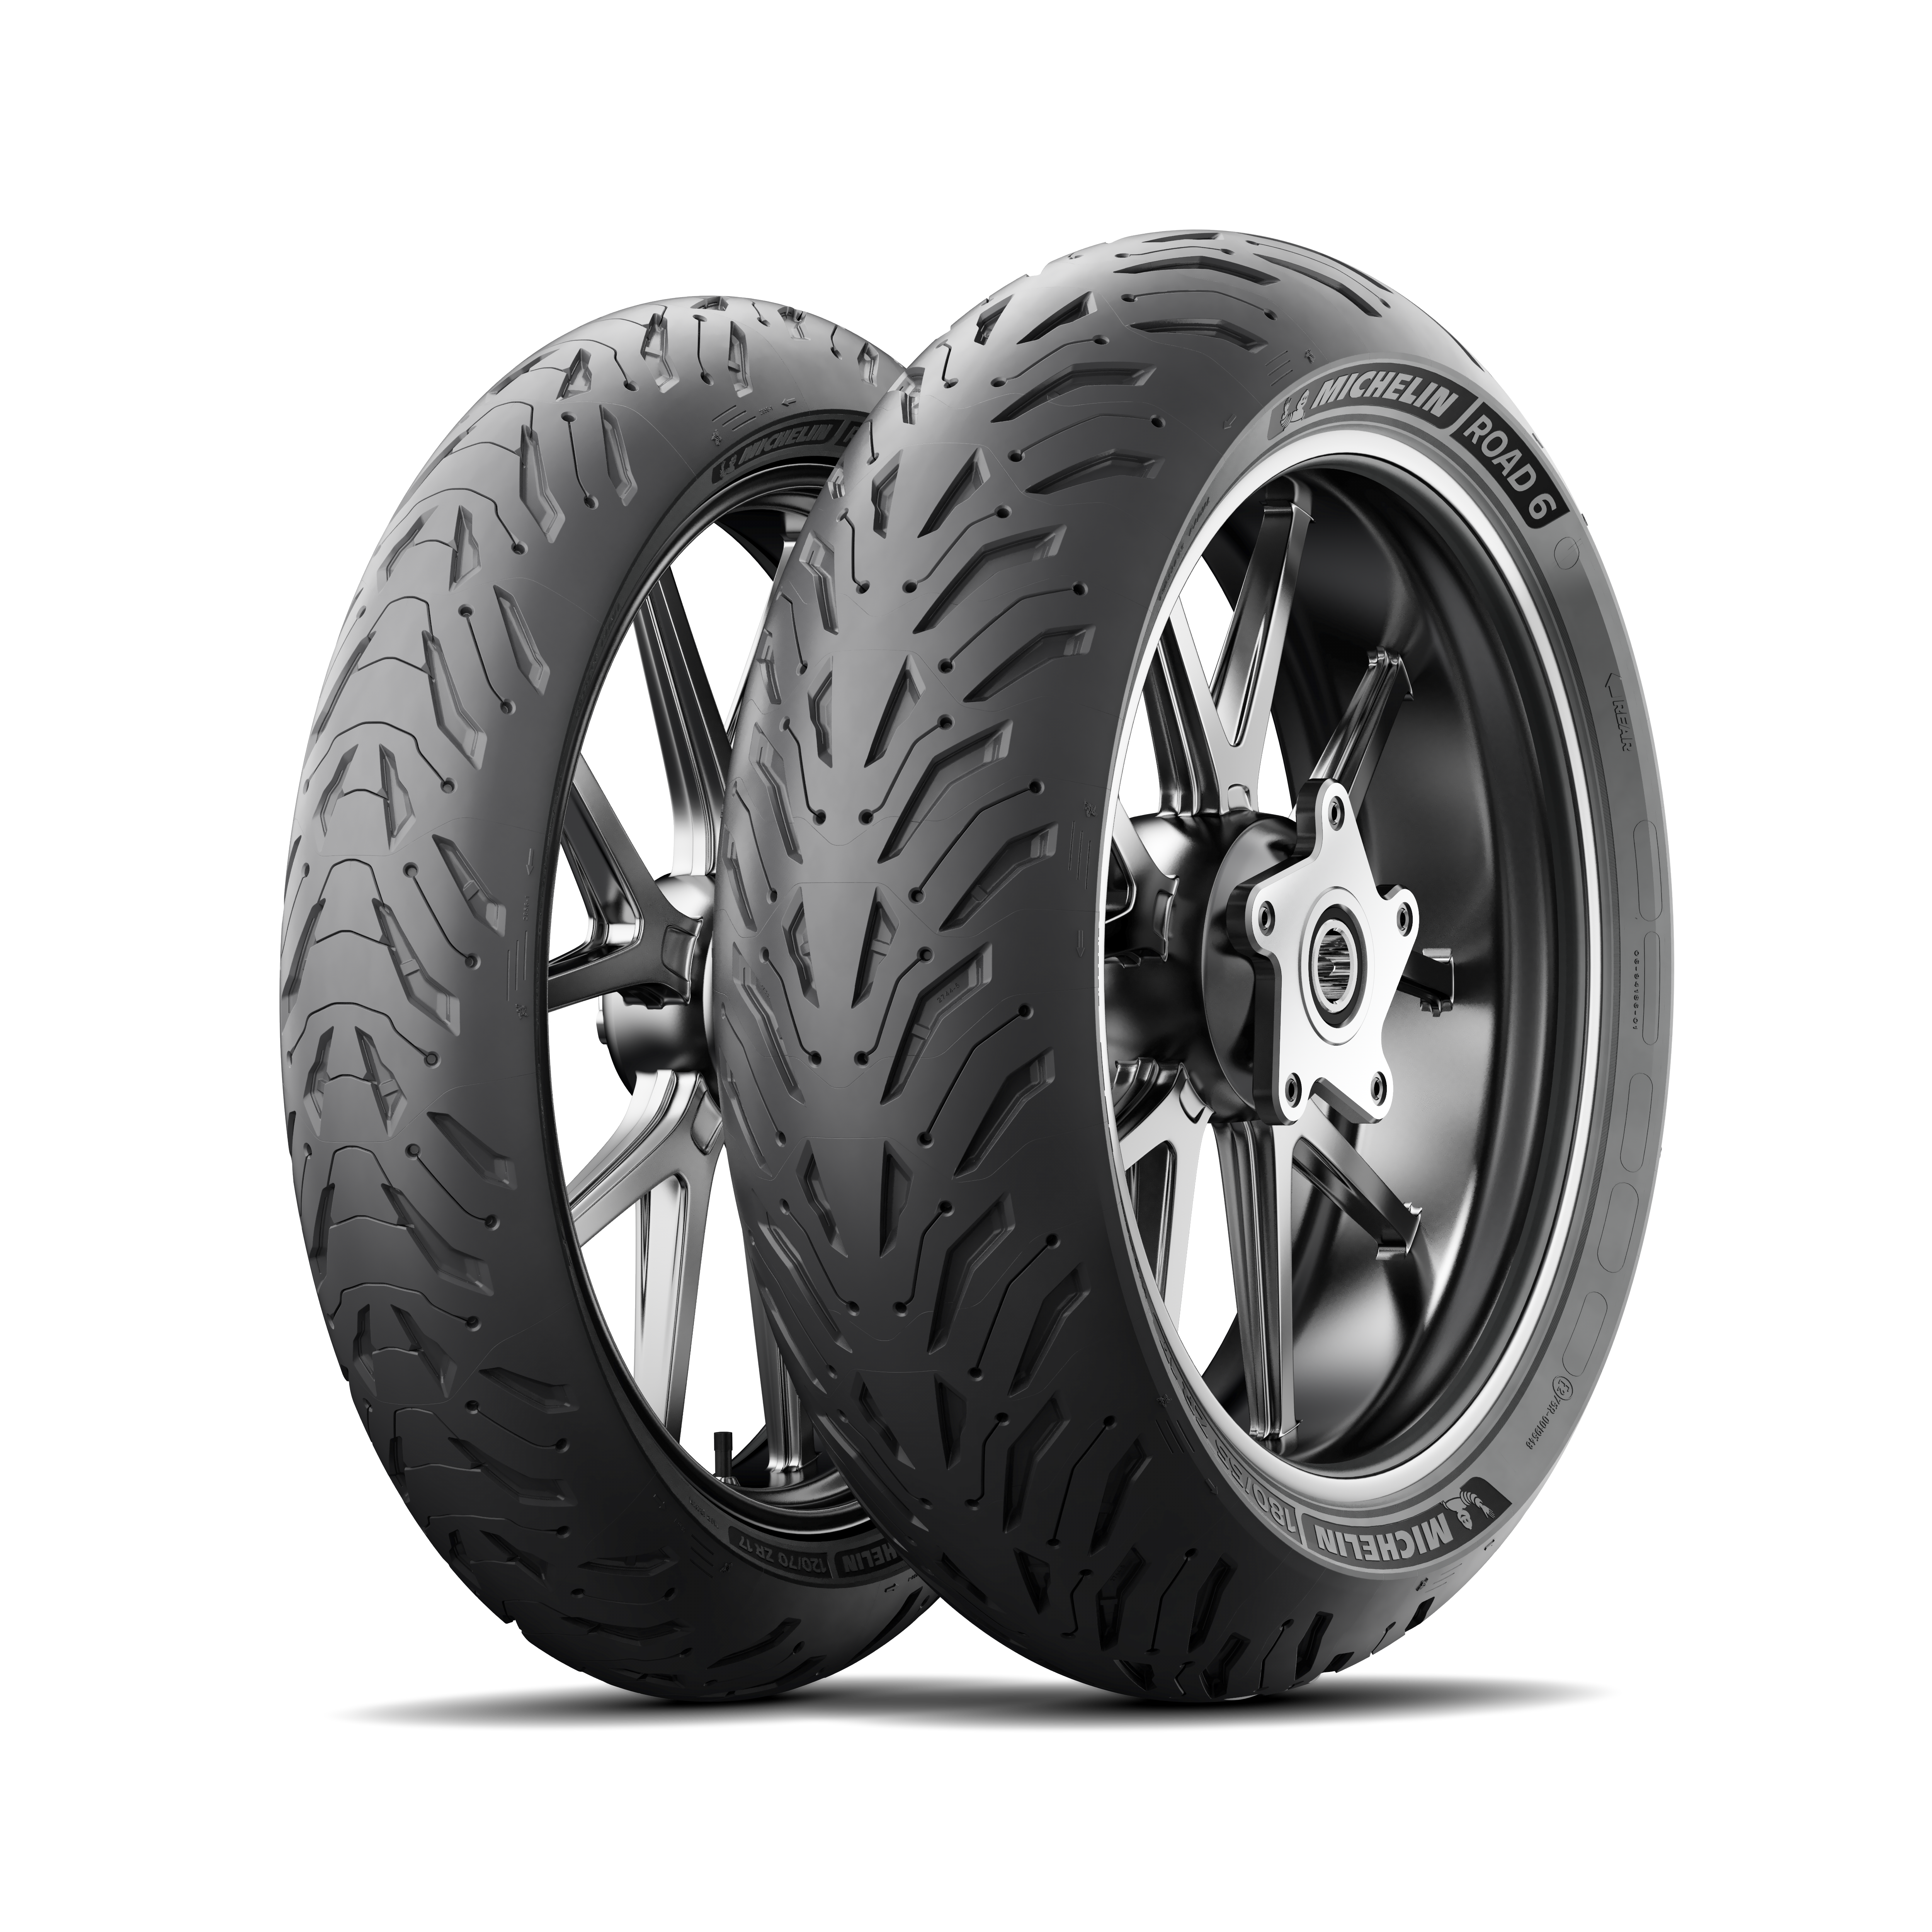 Michelin 180/55 ZR17 Pilot Power Rear Tyre for sale online